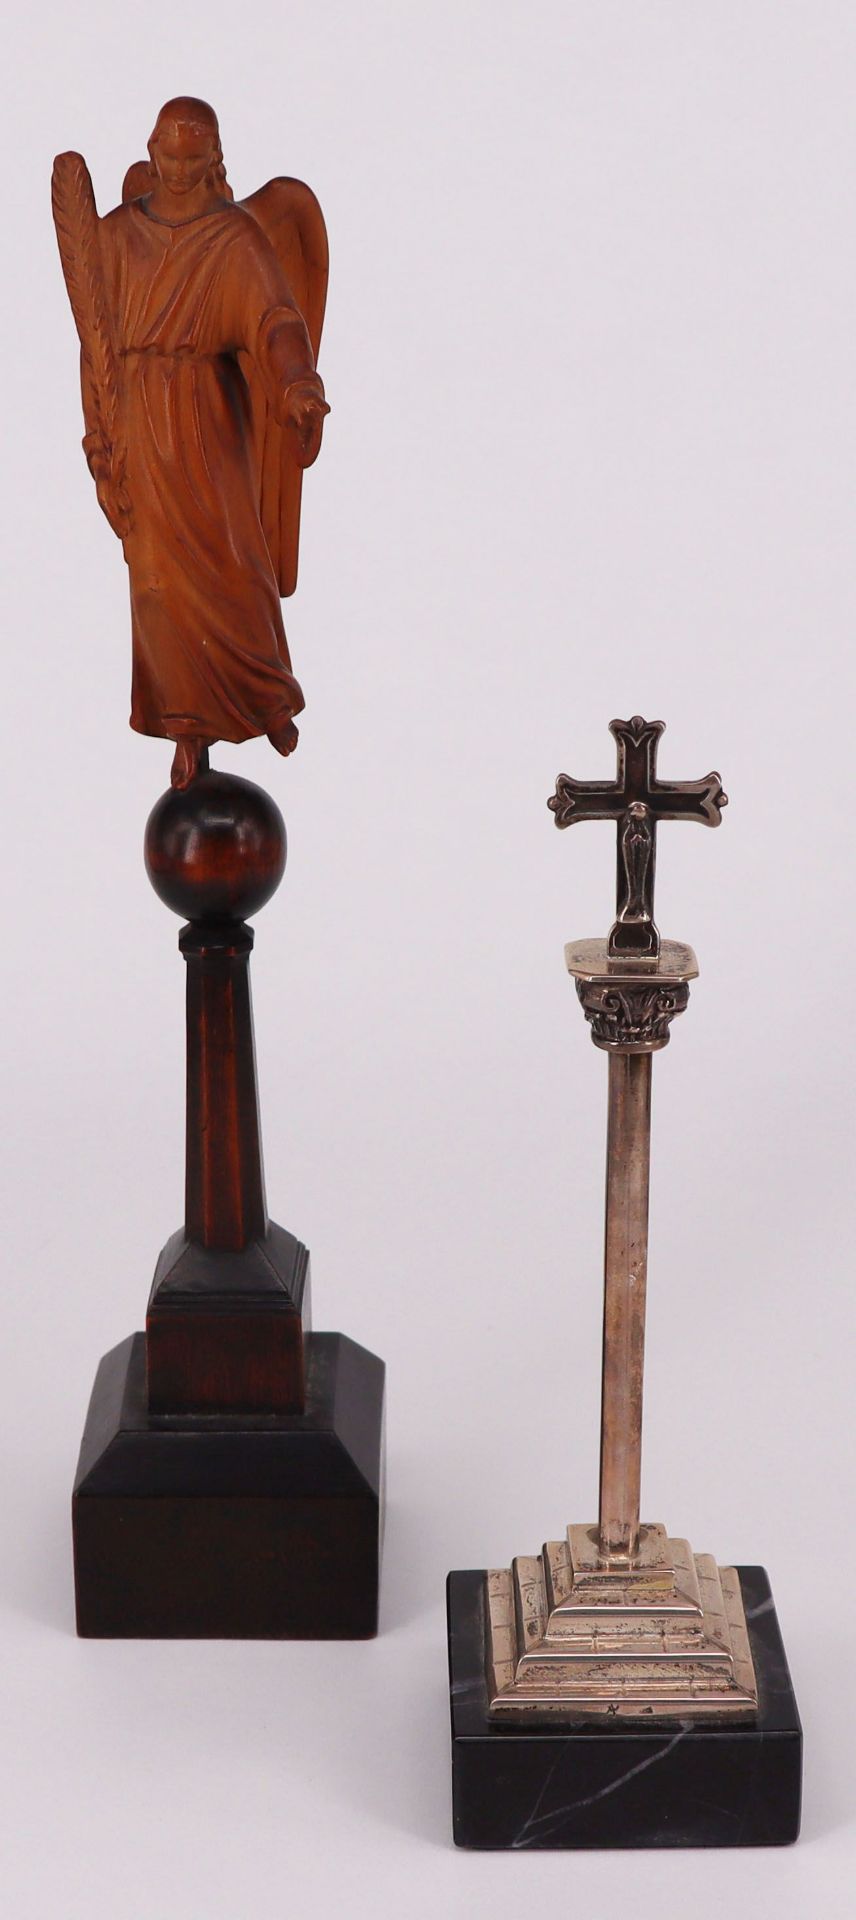 2 Figuren auf Sockel: Erzengel mit langen Flügeln und Palmwedel, Holz, mit dem rechten Fuß auf einer